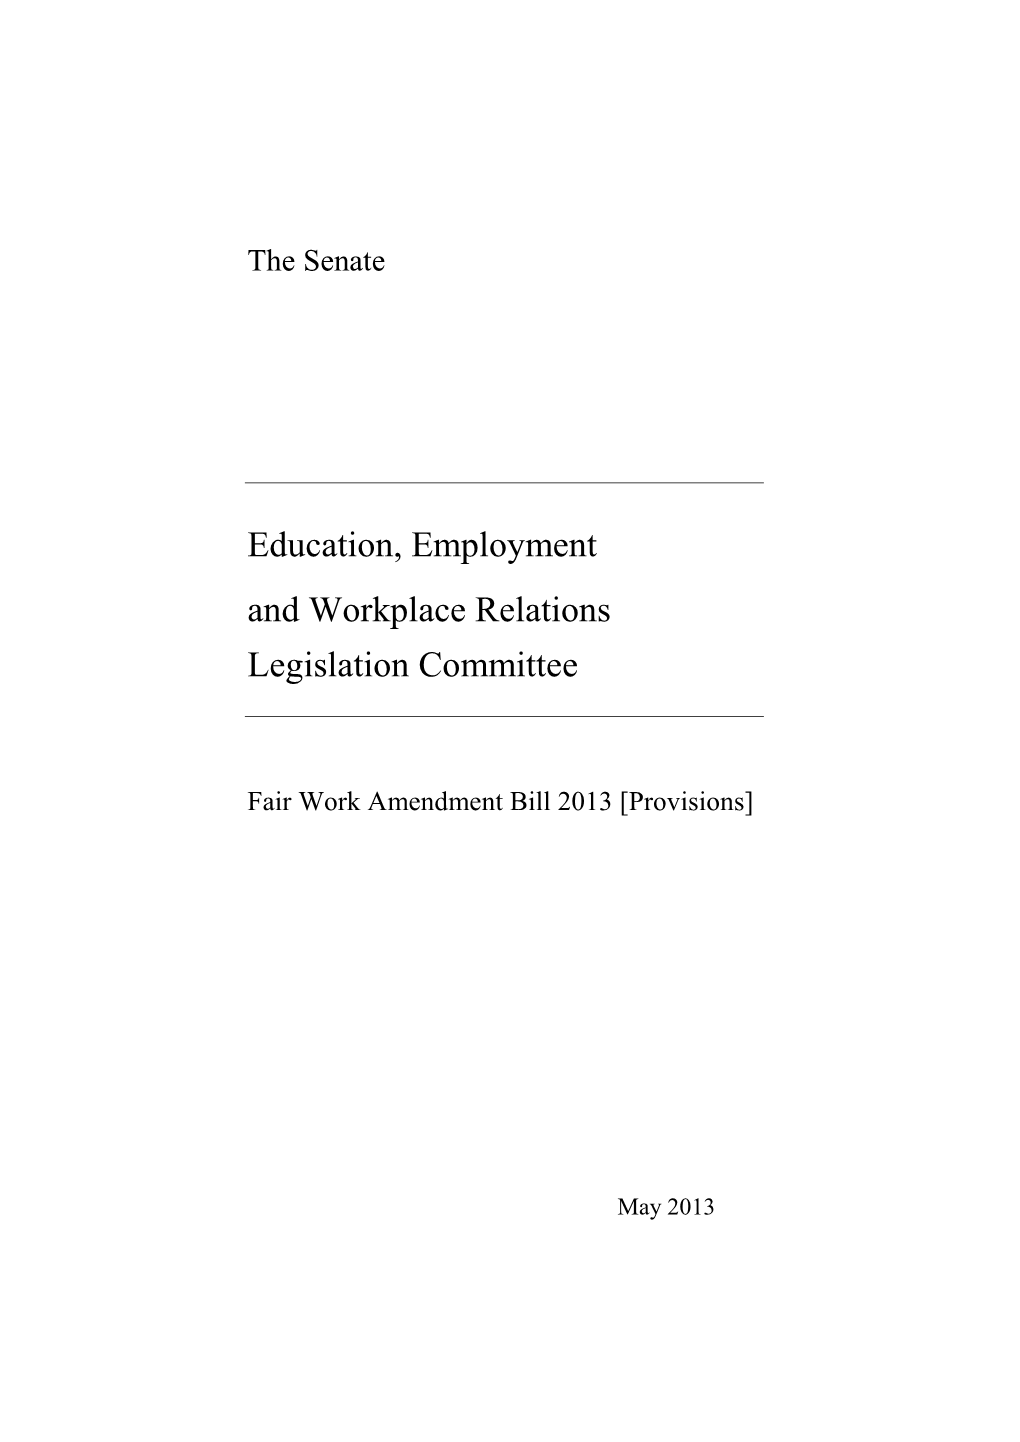 Fair Work Amendment Bill 2013 [Provisions]